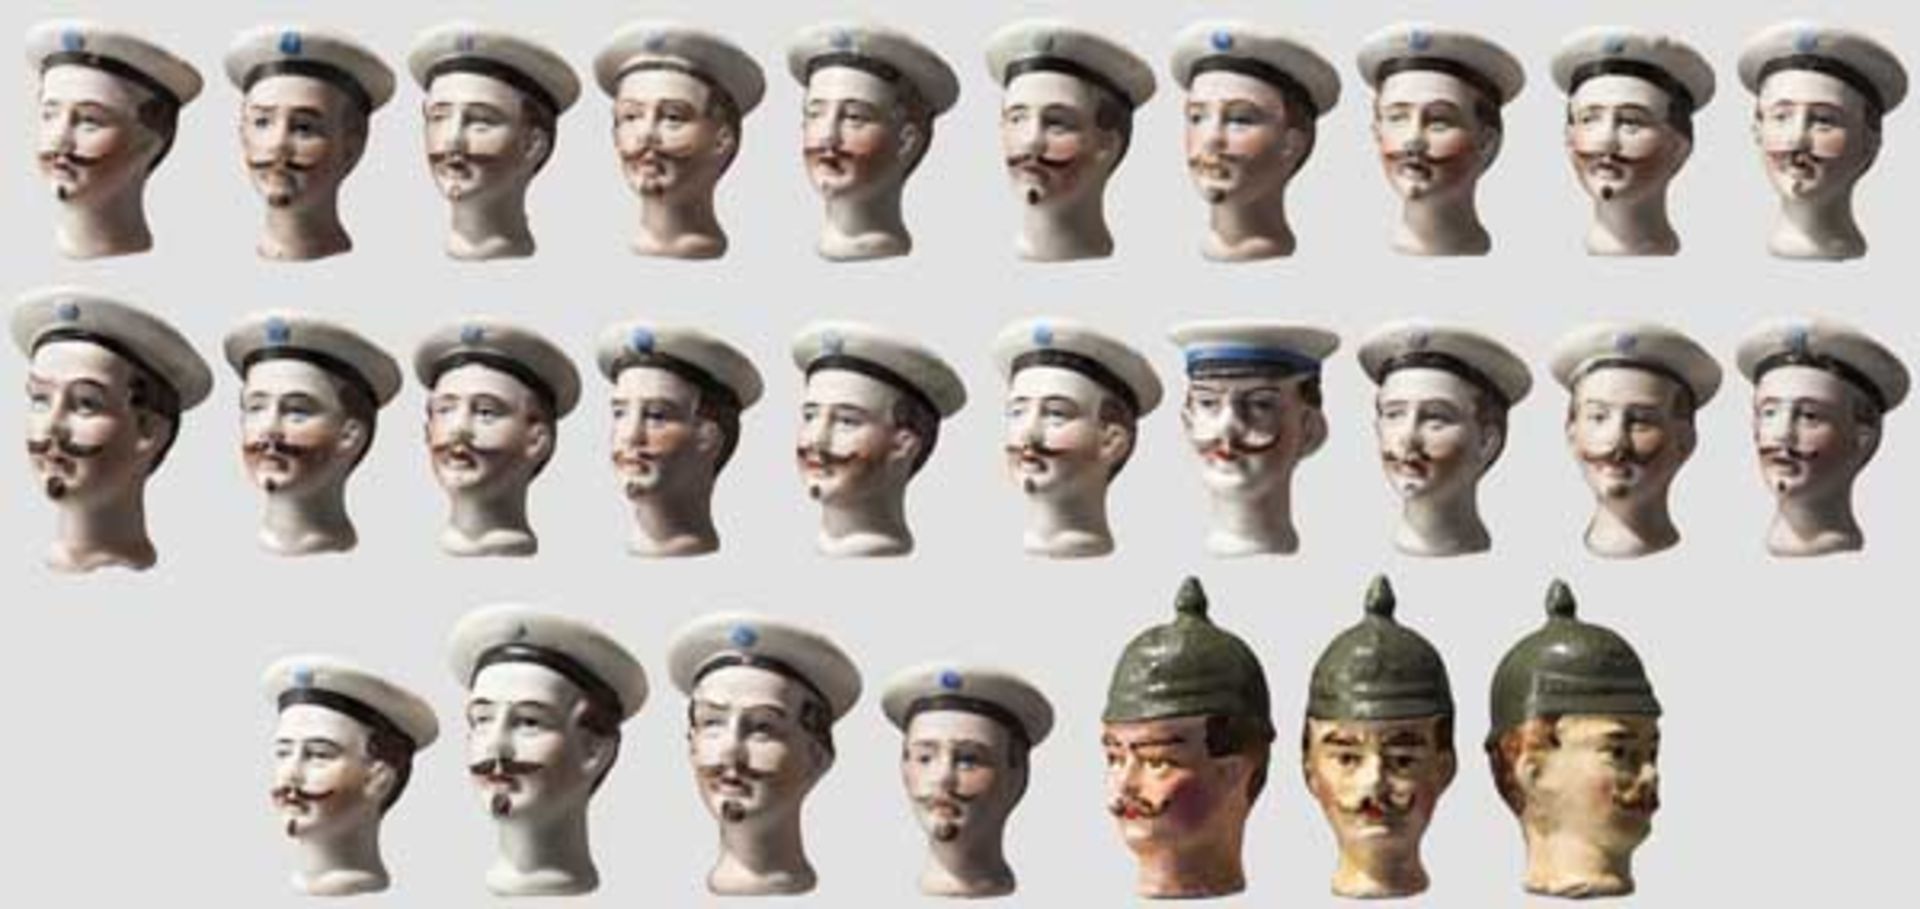 24 Porzellan-Puppenköpfe, Marine, Kaiserreich Weißes, handbemaltes Biskuitporzellan, ohne